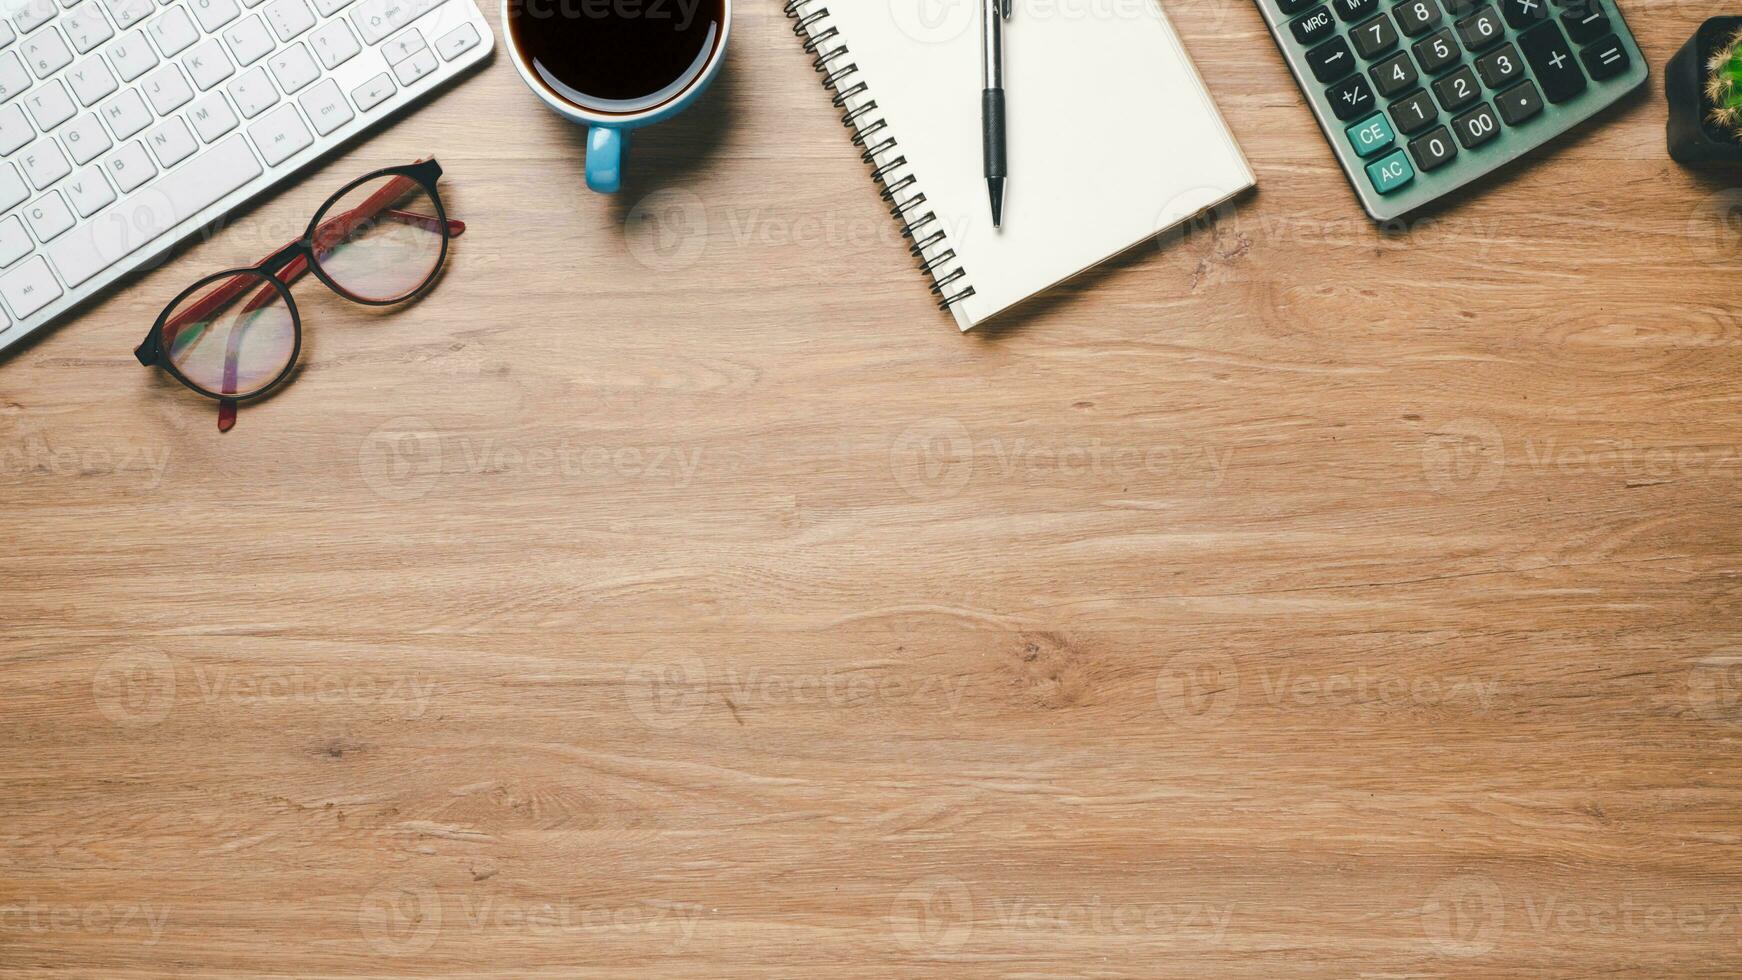 Haut voir, Bureau en bois bureau avec clavier, carnet de notes, stylo, monocle, calculatrice et tasse de café, copie espace, moquer en haut. photo